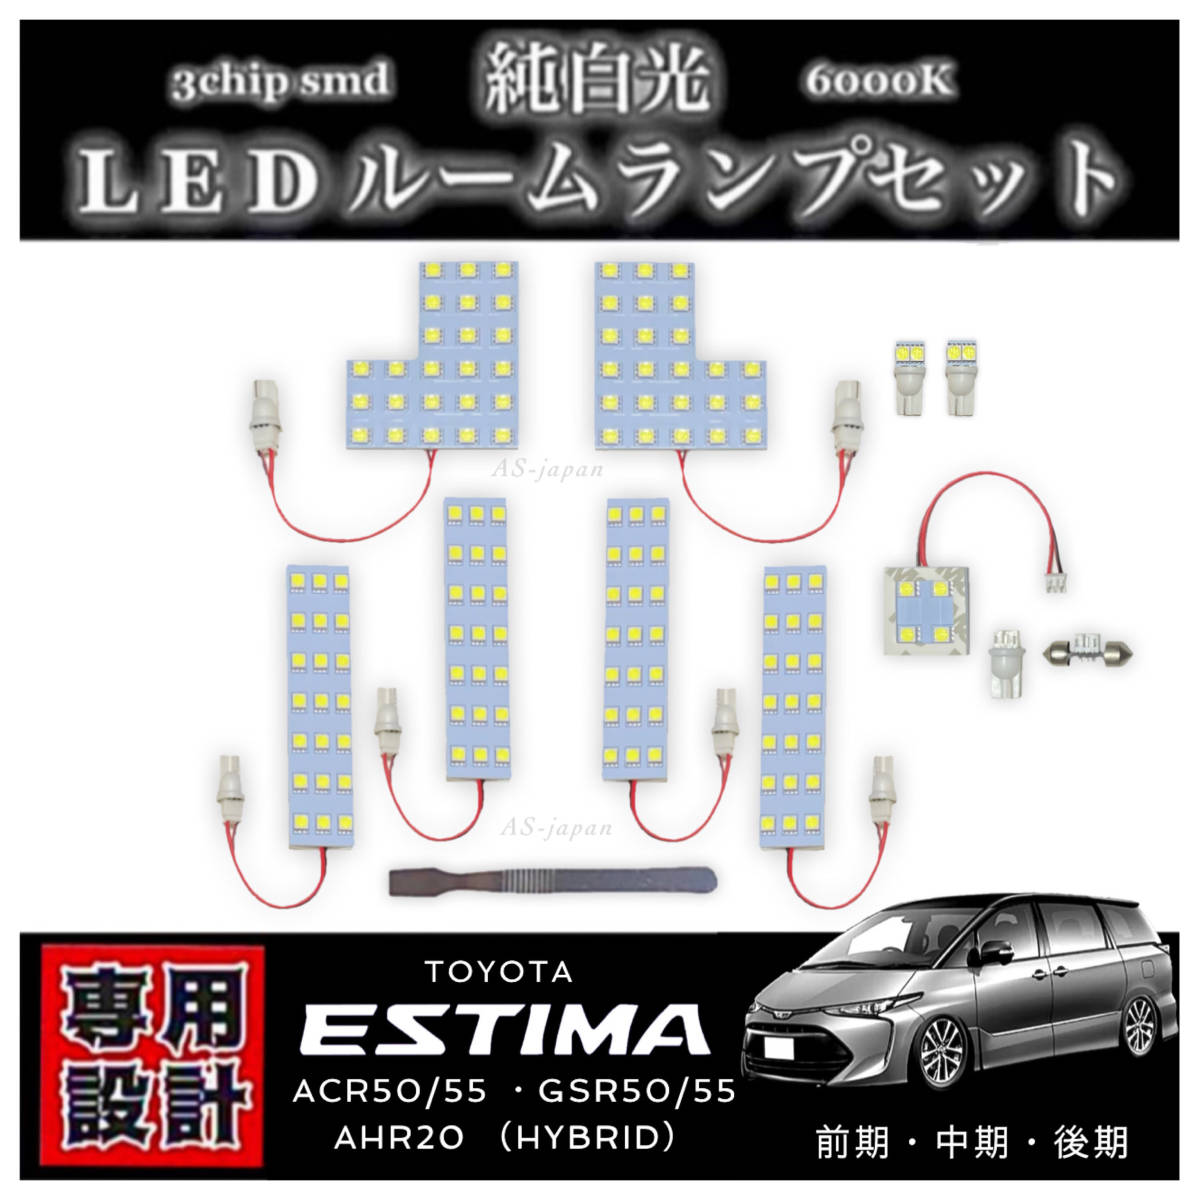 エスティマ 50系 20系 専用設計 LED ルームランプ セット 高輝度 3chip SMD 6000K 純白光 ACR50 ACR55 GSR50 GSR55 AHR20 前期 中期 後期の画像1